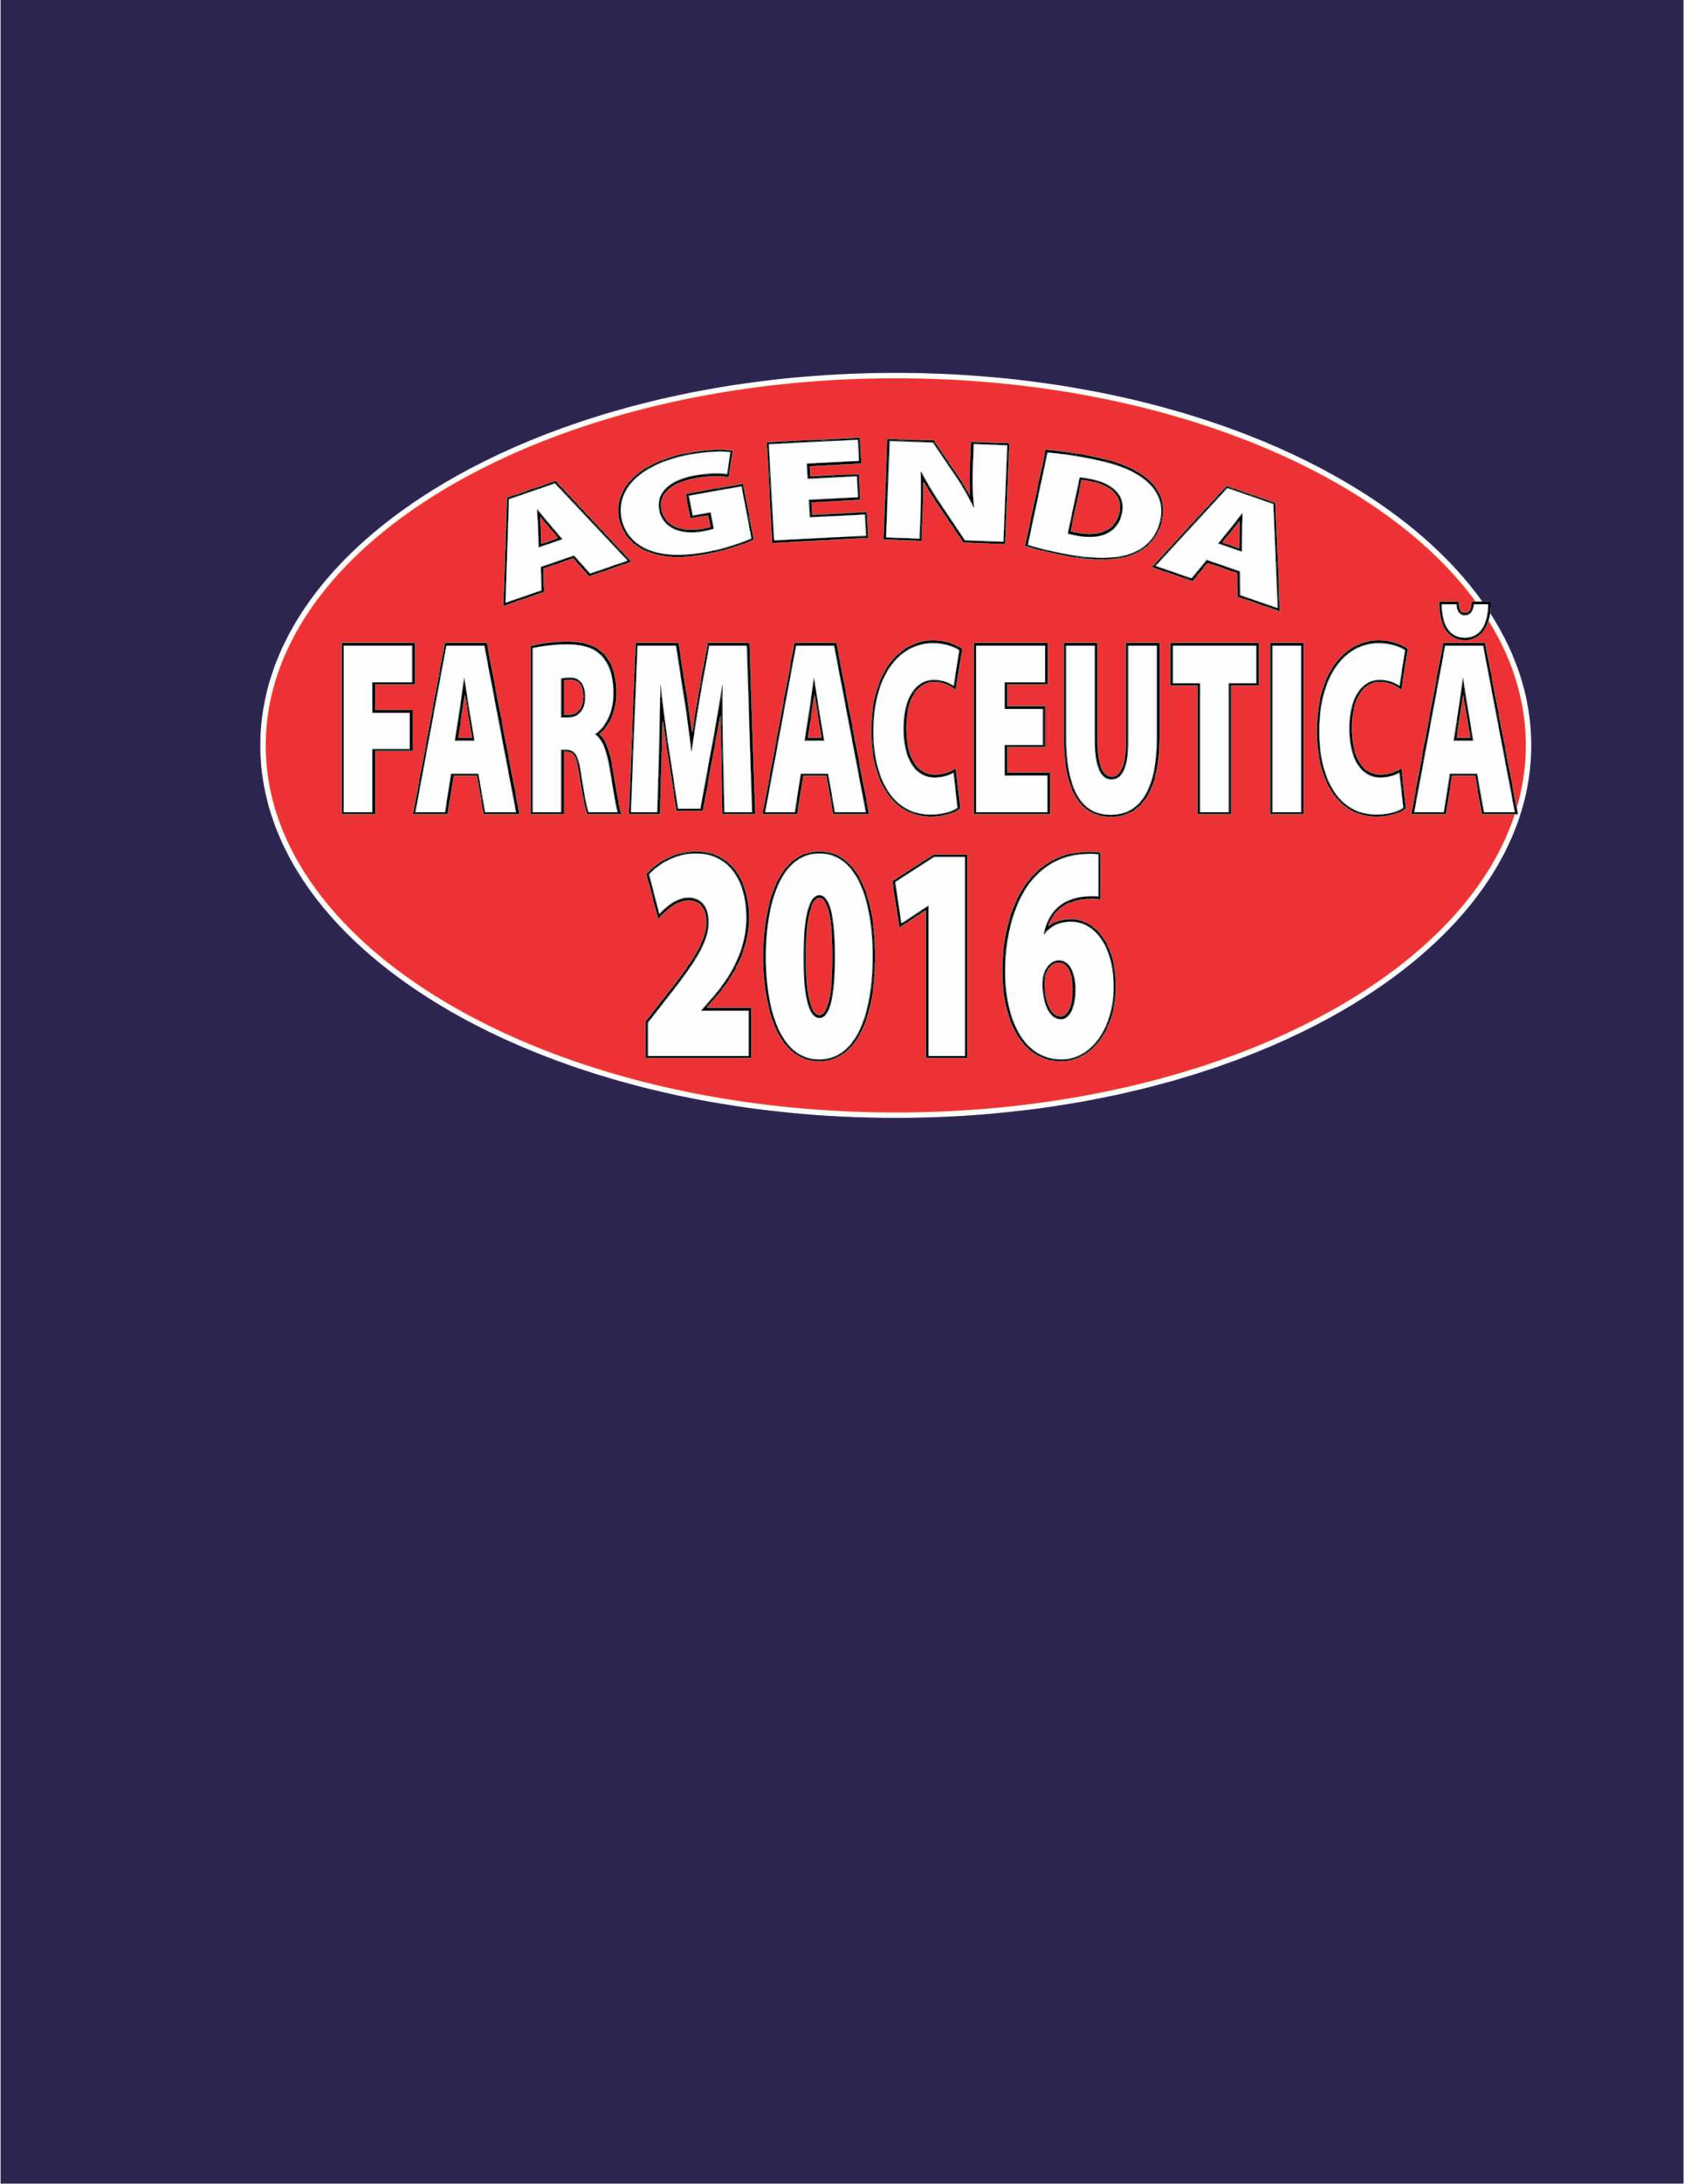 Agenda farmaceutica 2016